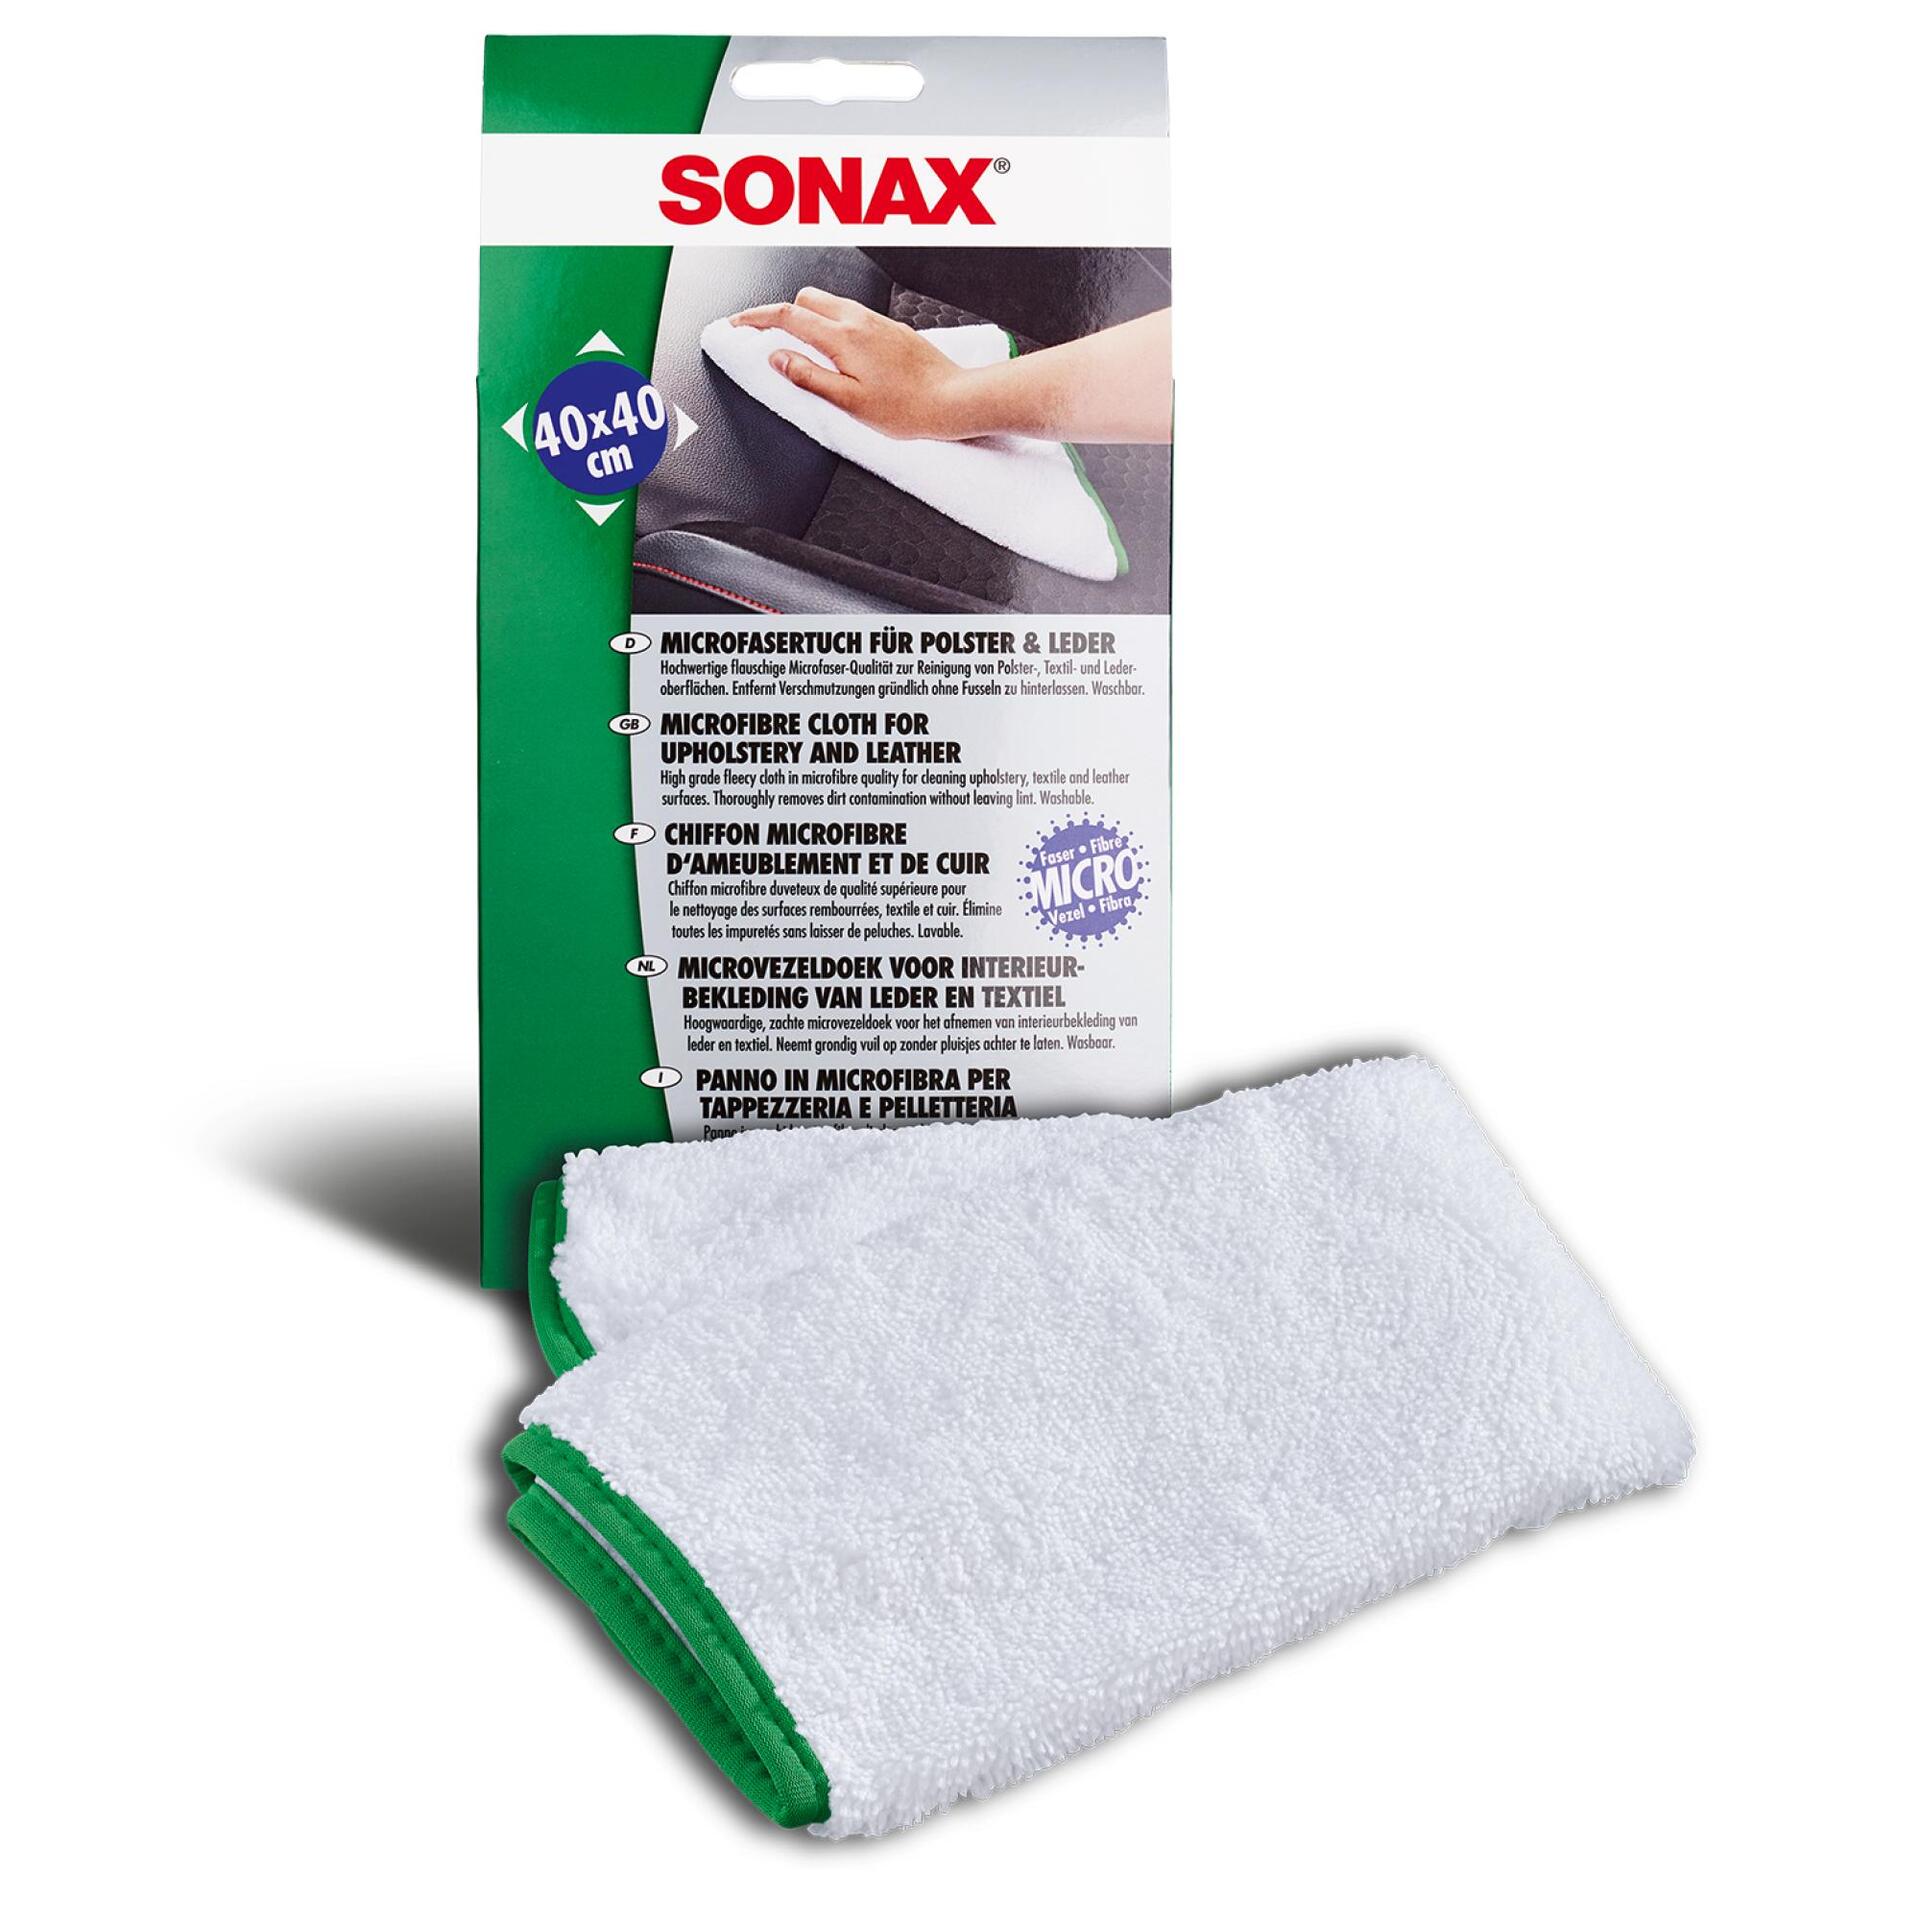 SONAX Microfaser-Tuch für Polster und Leder